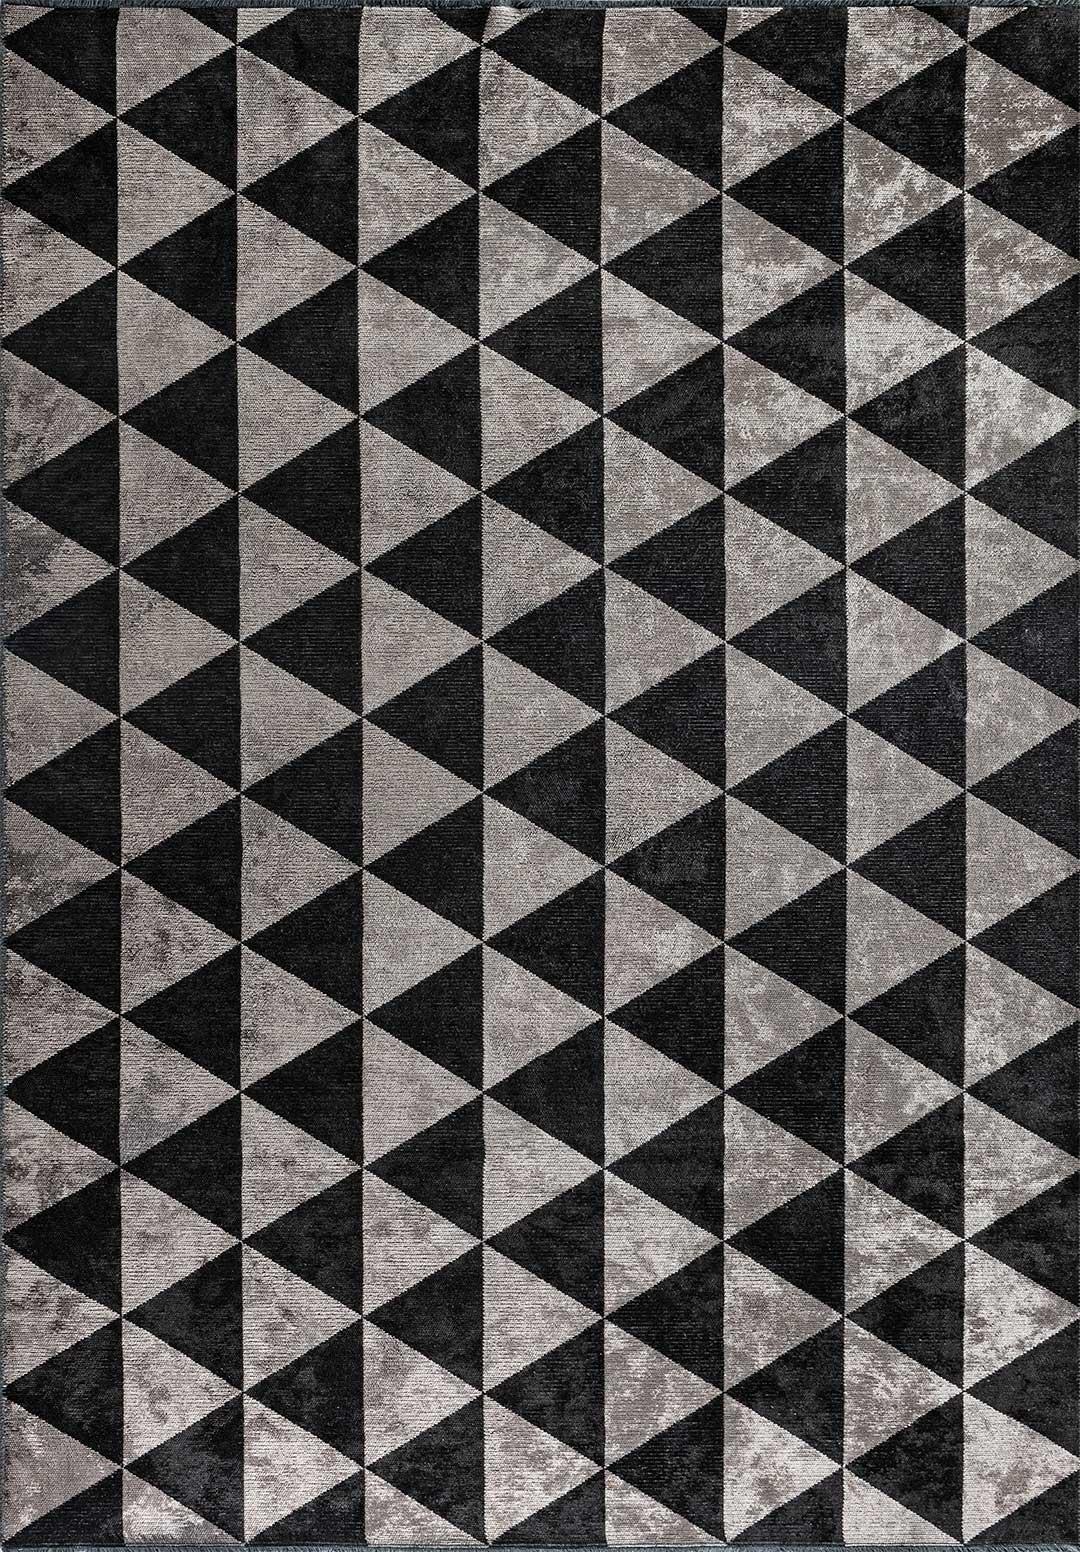 Turc Tapis gris argenté, gris et noir à motif géométrique triangulaire en forme de diamant avec brillance en vente